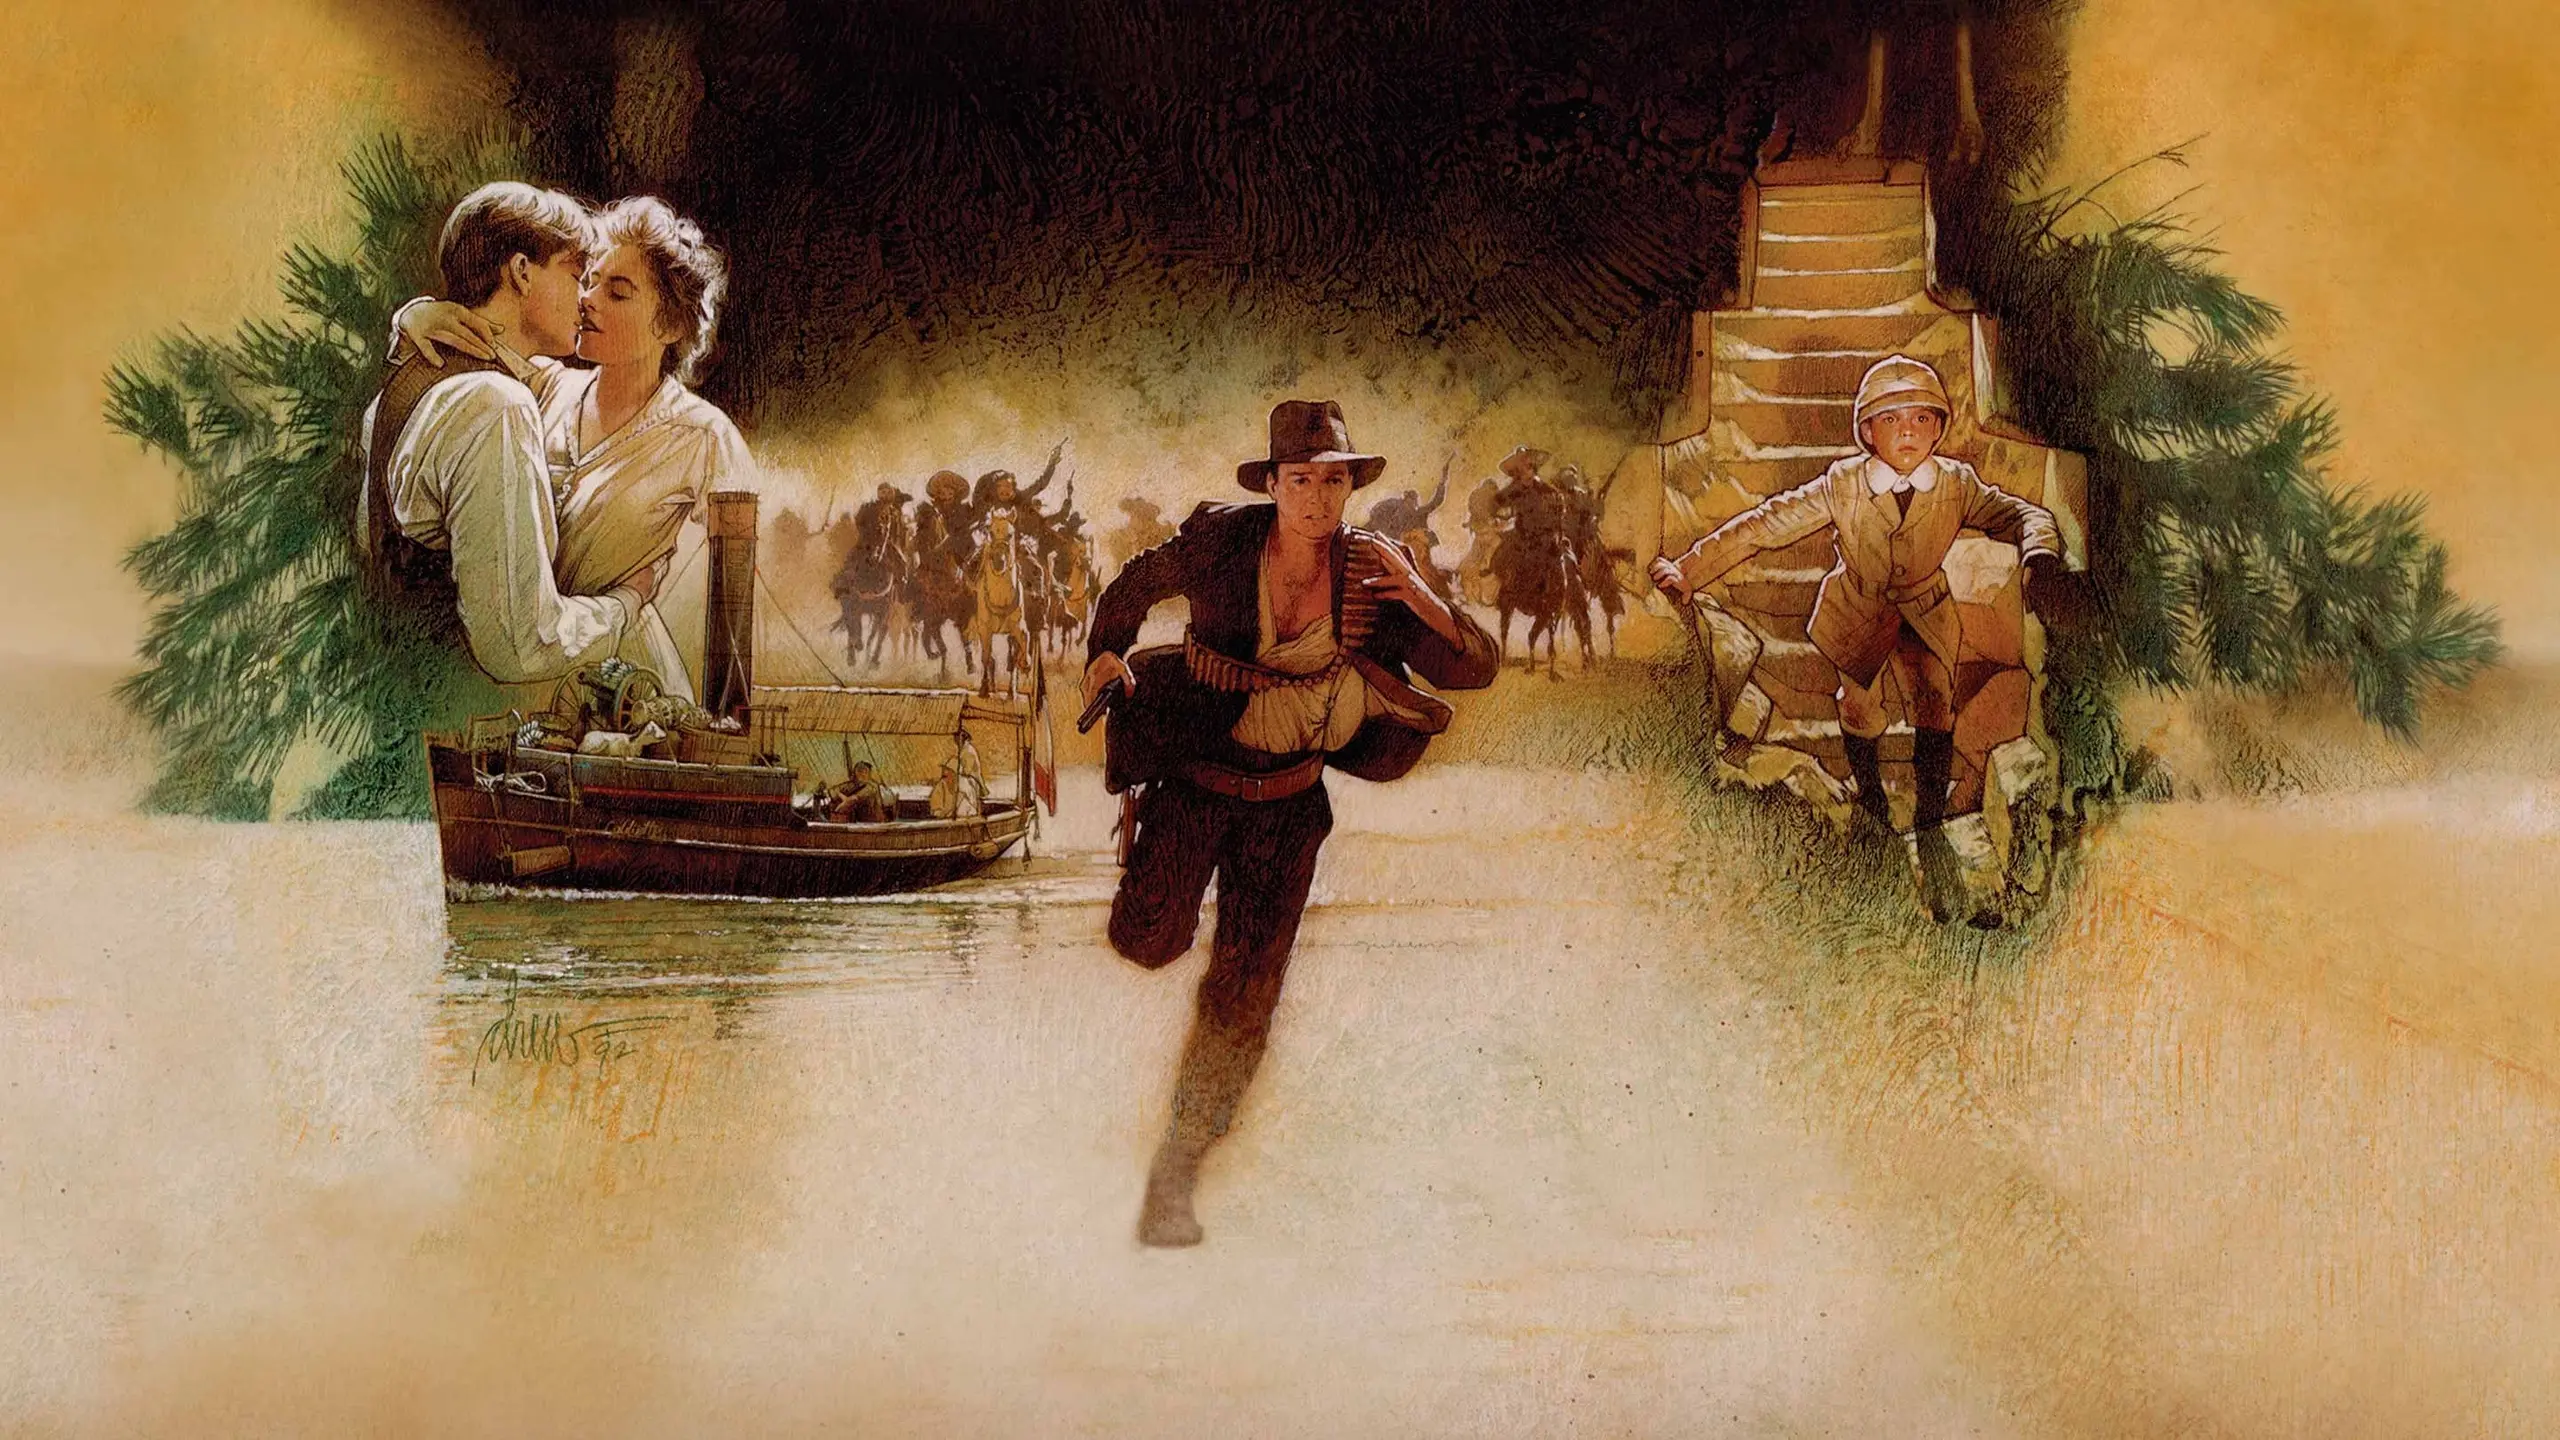 Die Abenteuer des jungen Indiana Jones